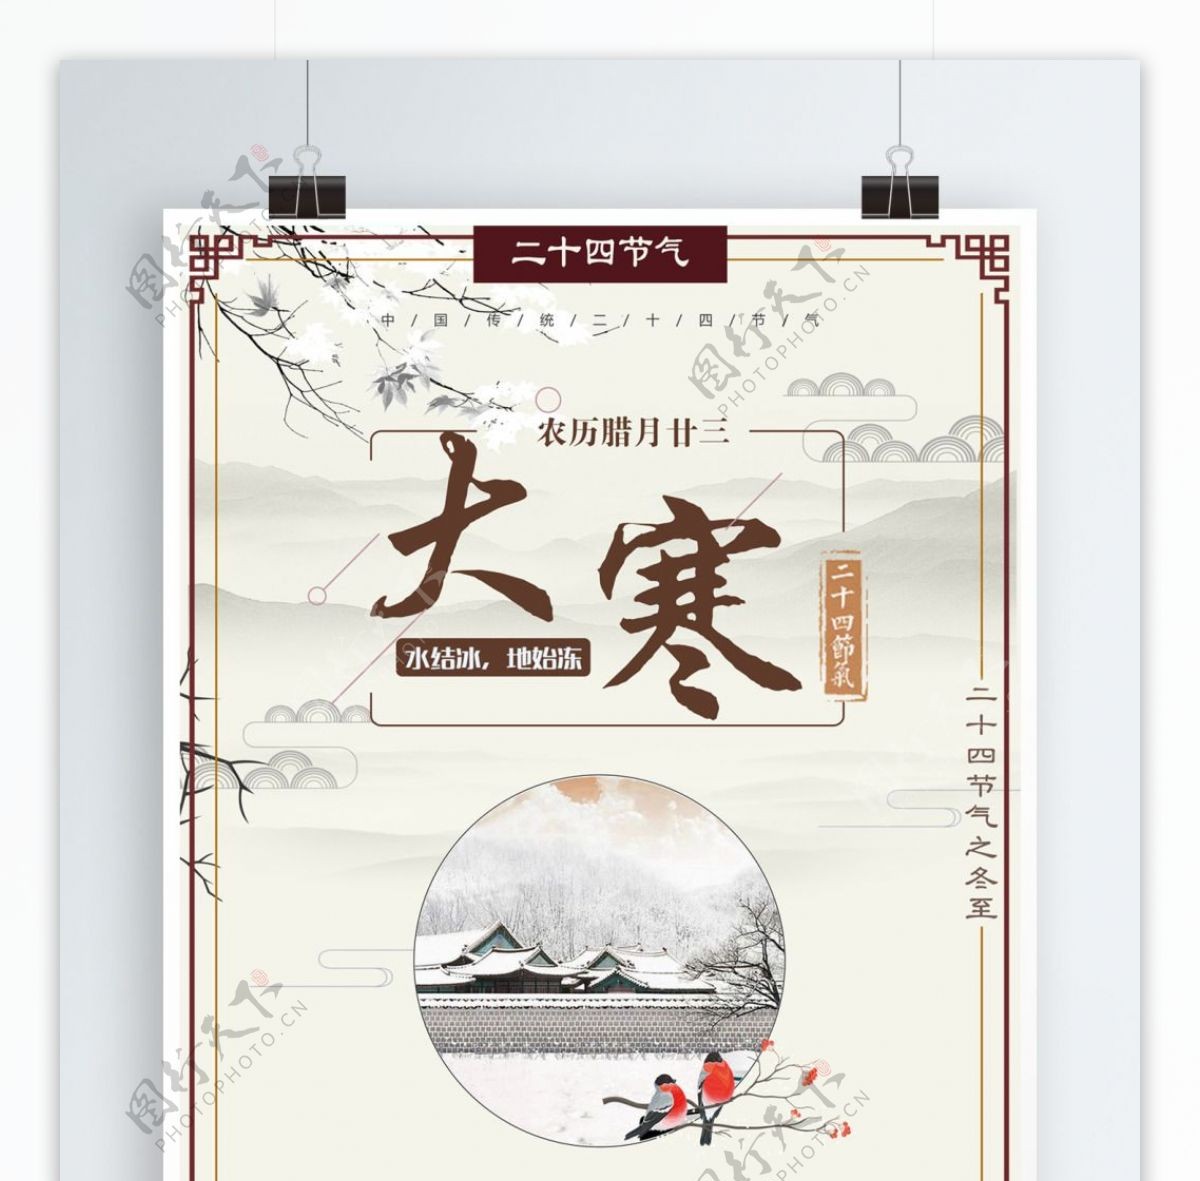 中国风二十四节气之大寒海报设计